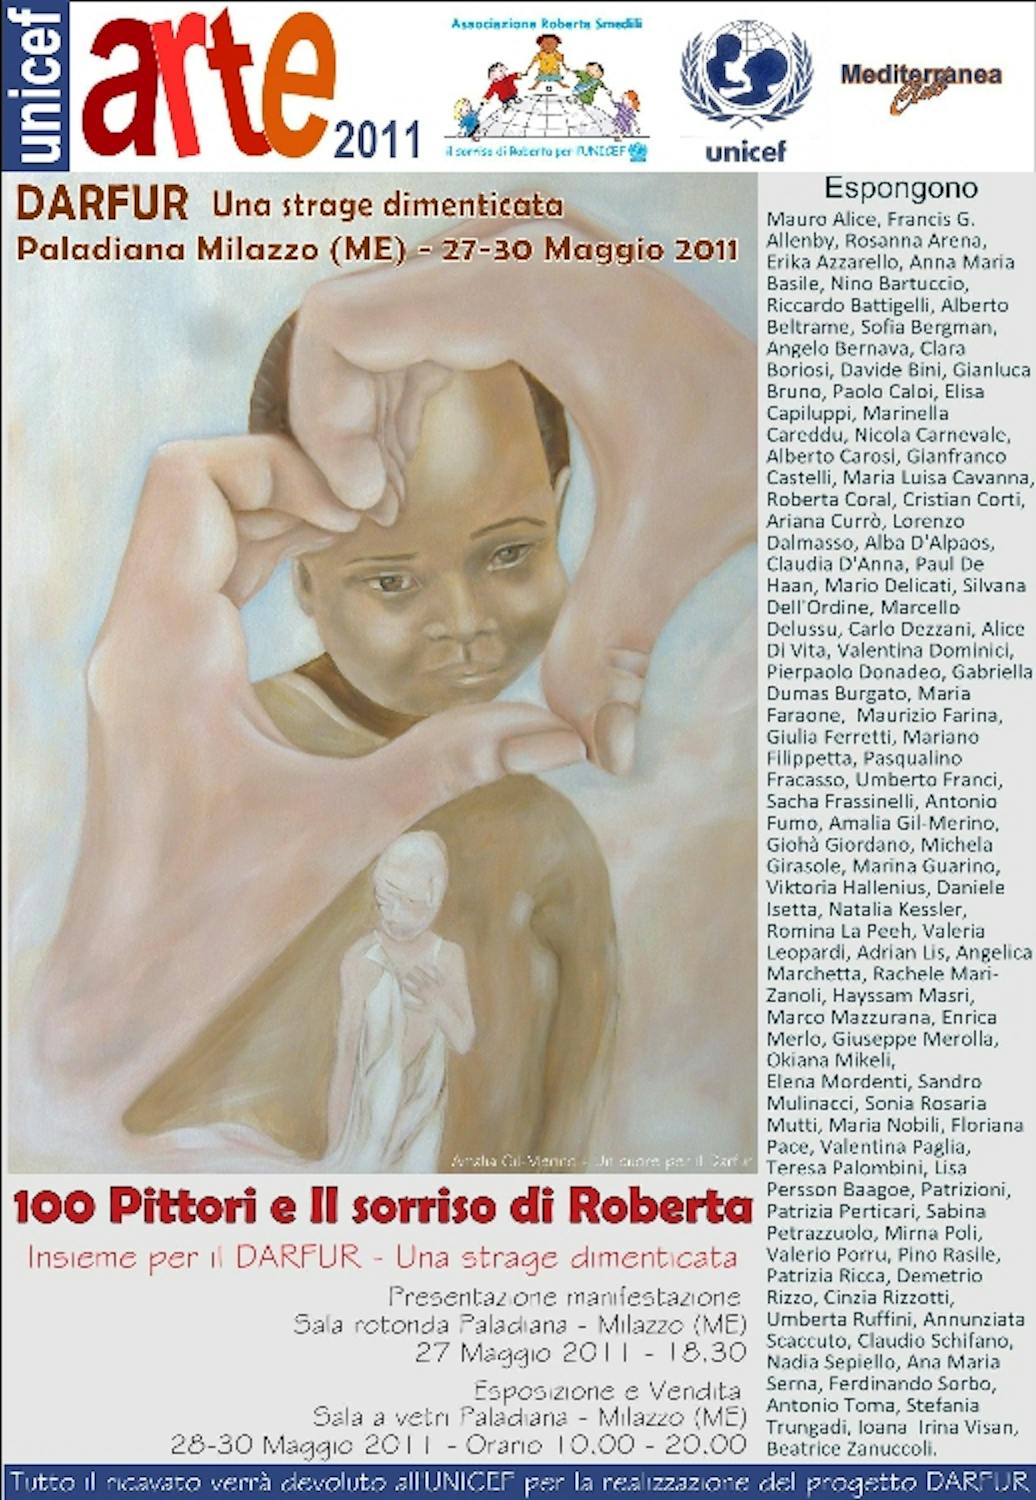 A Milazzo (ME), 100 pittori per l'UNICEF